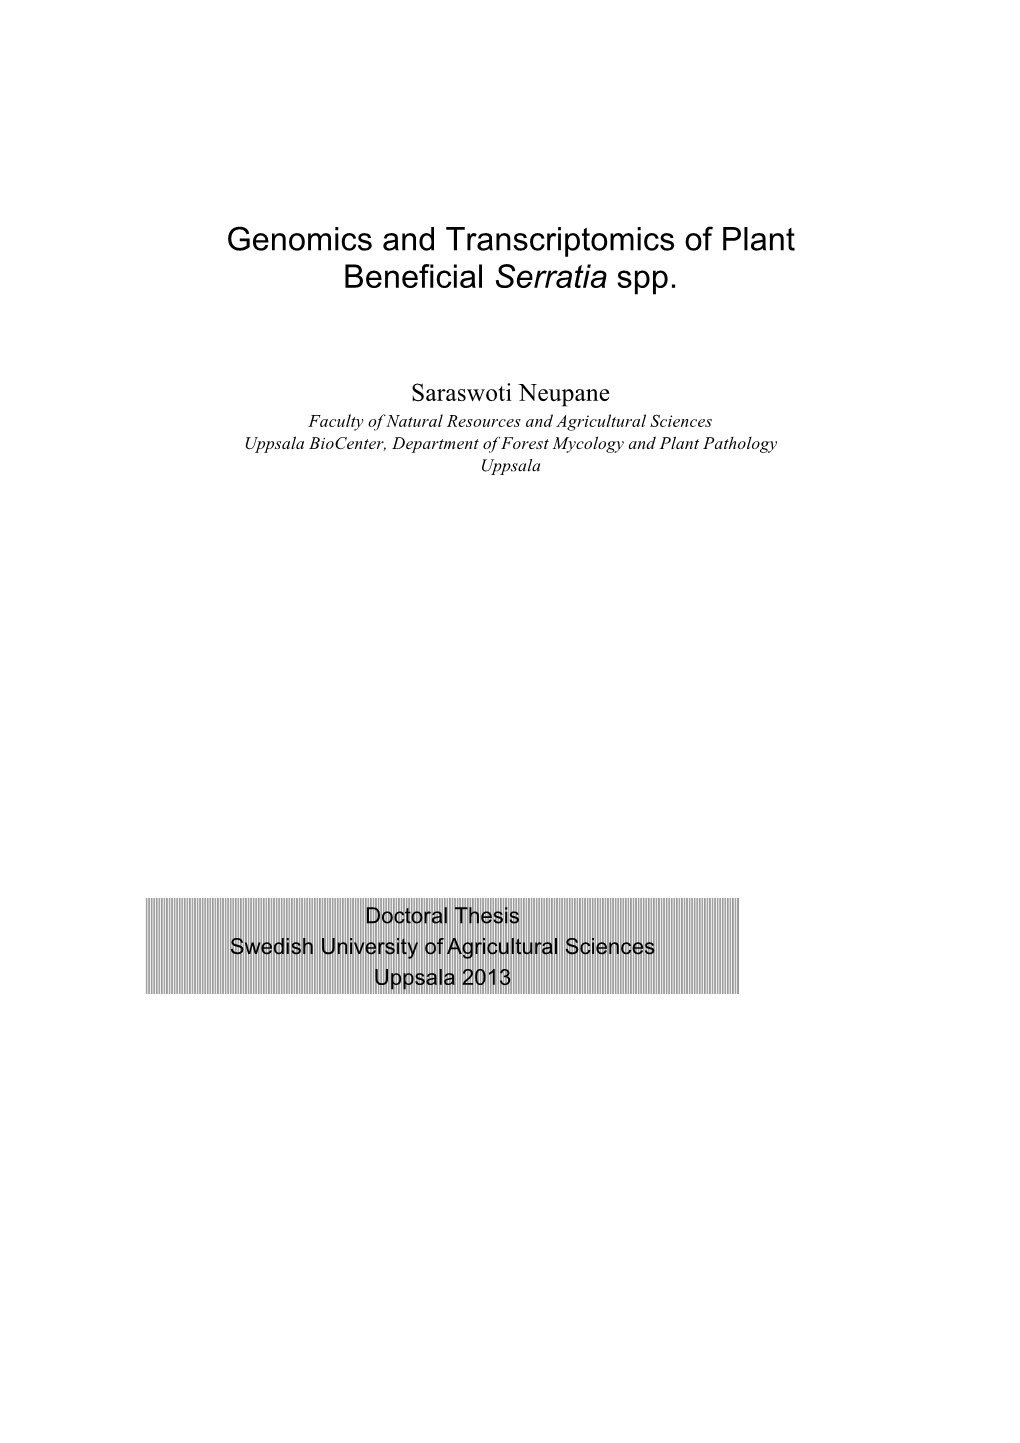 Genomics and Transcriptomics of Plant Beneficial Serratia Spp